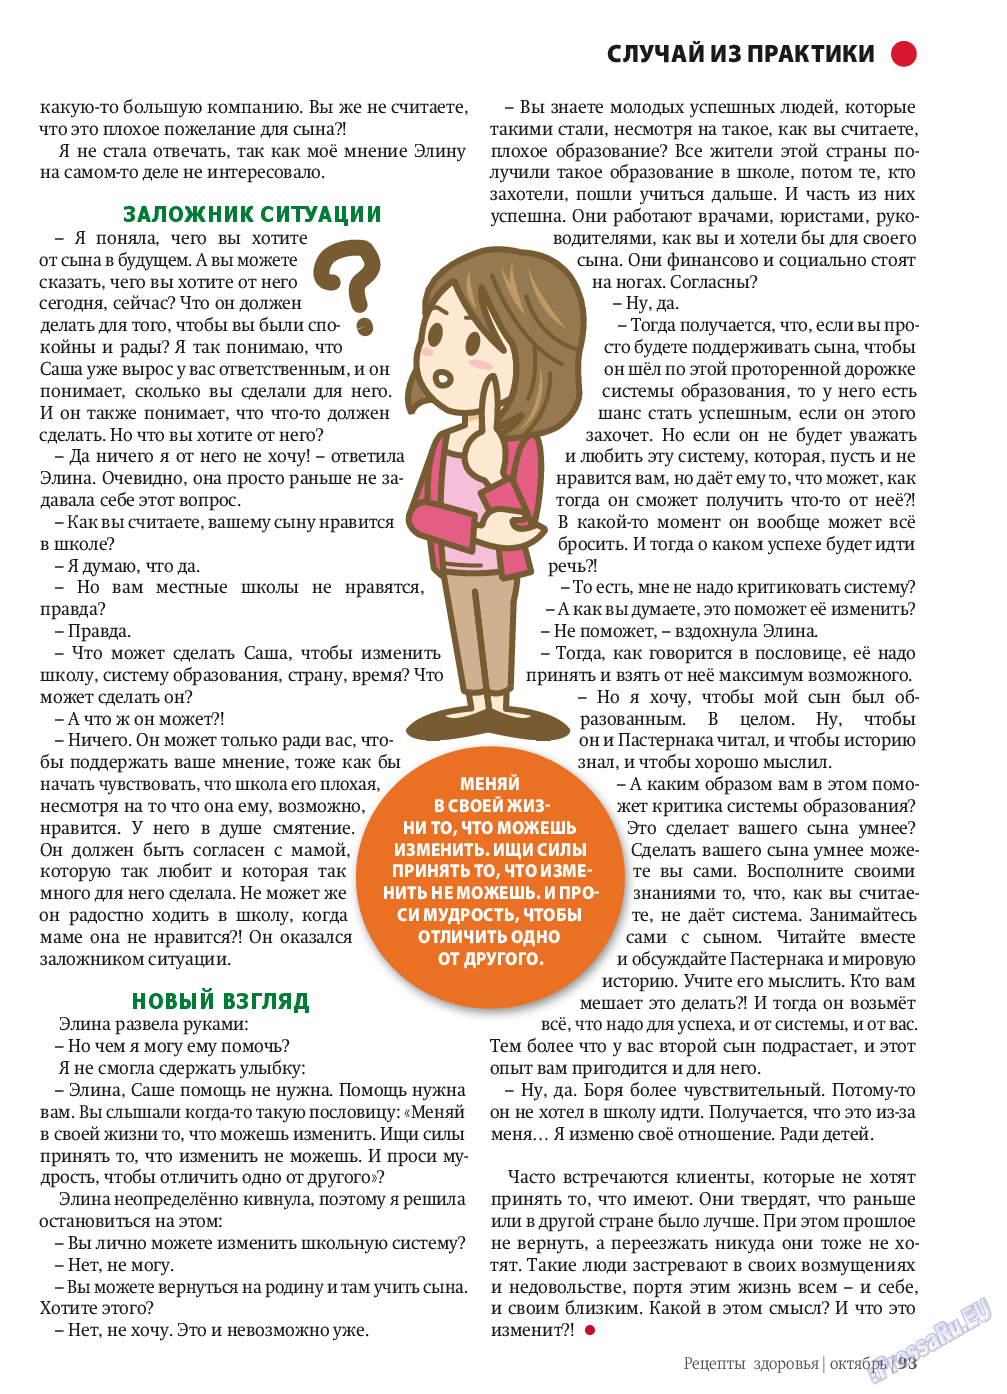 Рецепты здоровья, журнал. 2013 №10 стр.93